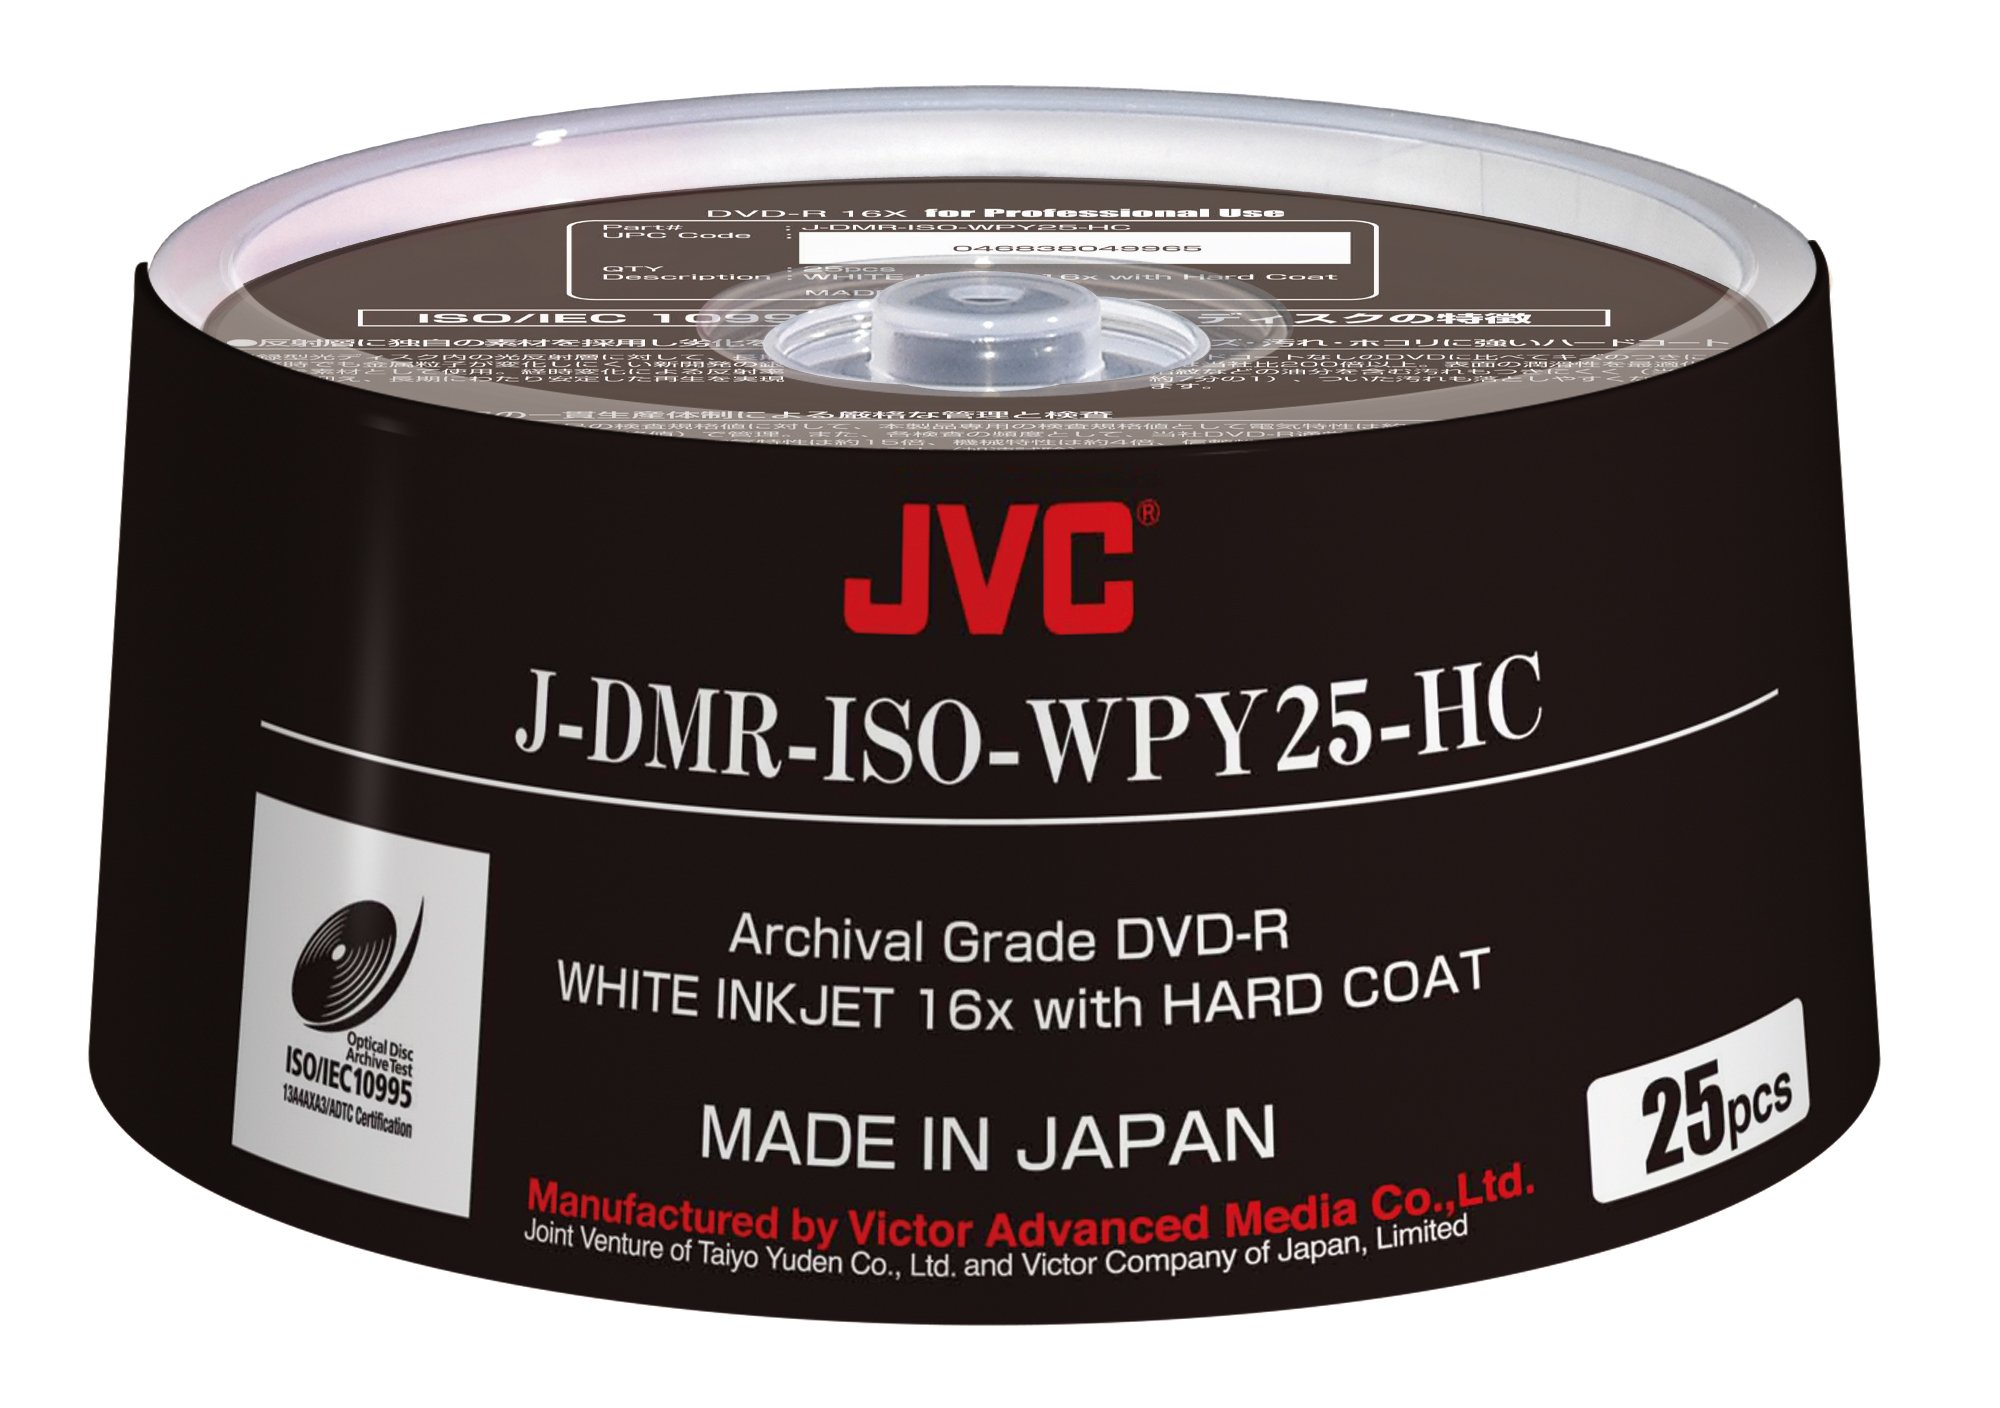 JVC ISO ARCHIVAL Grade DVD-R Made in Japan White Inkjet 16x Hard Coat 25 Pack Part# J-DMR-ISO-WPY25-HC